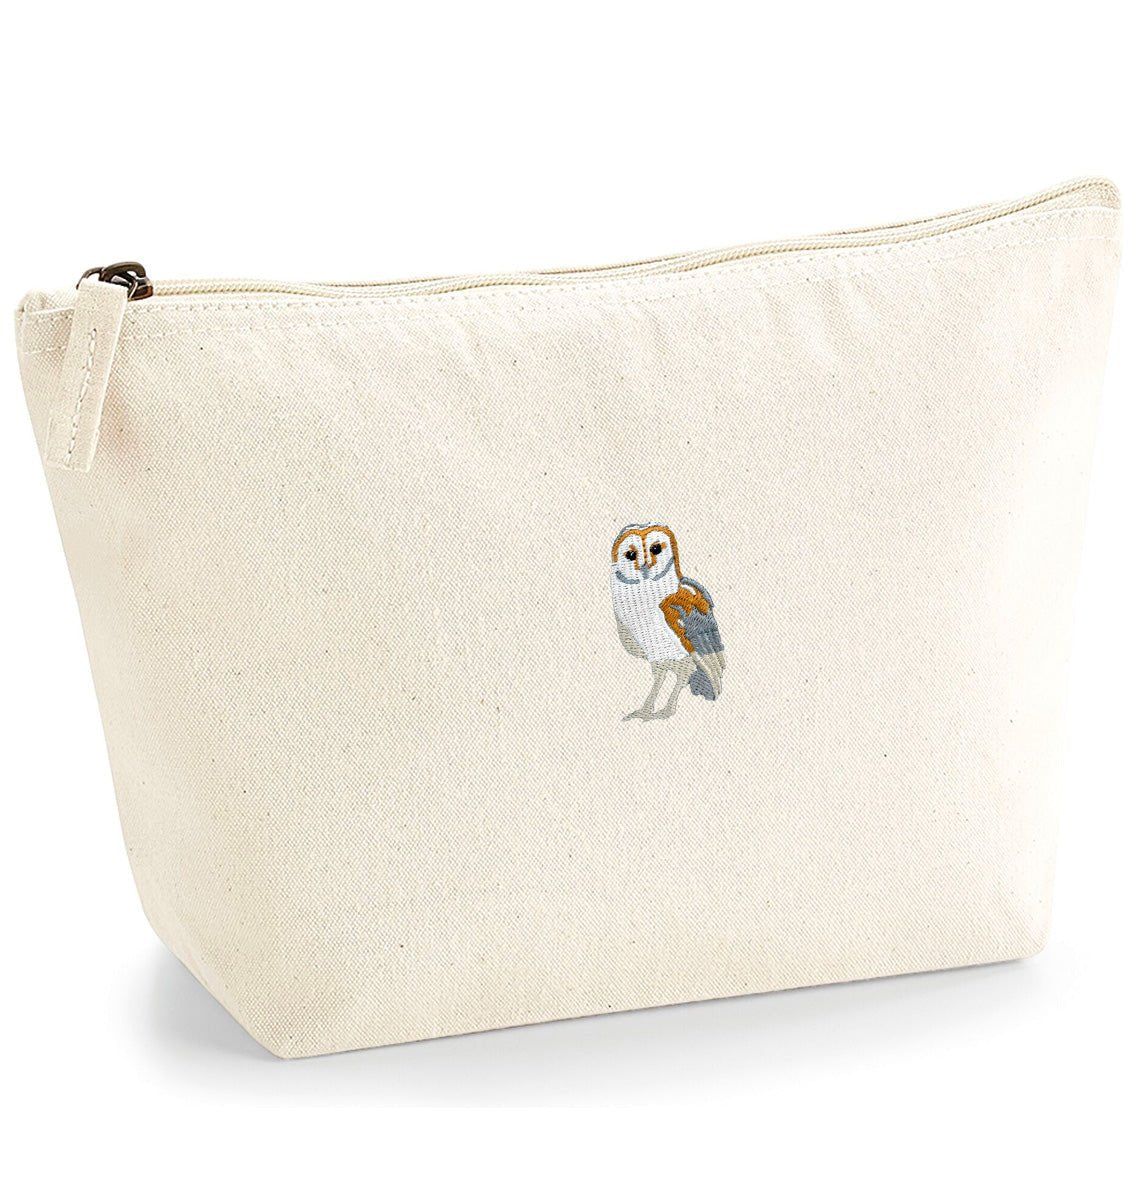 Barn Owl Organic Accessory Bag - Blue Panda